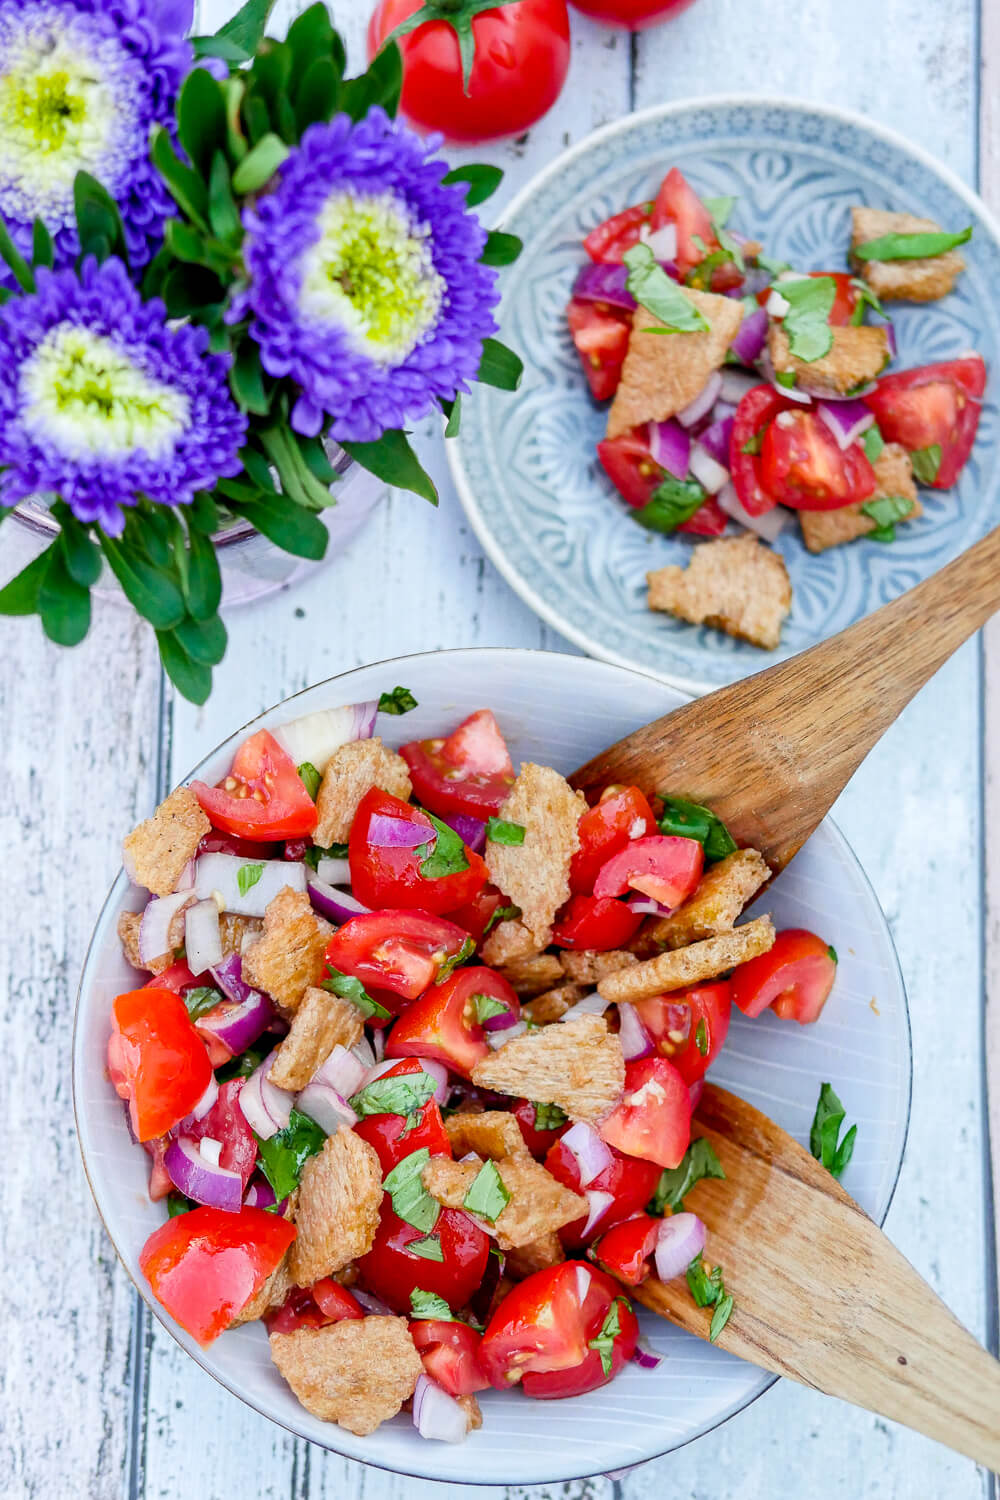 Schneller und einfacher Tomaten-Brot-Salat mit knusprigem Knäckebrot, aromatischen Tomaten und einem Knoblauch-Olivenöl-Dressing